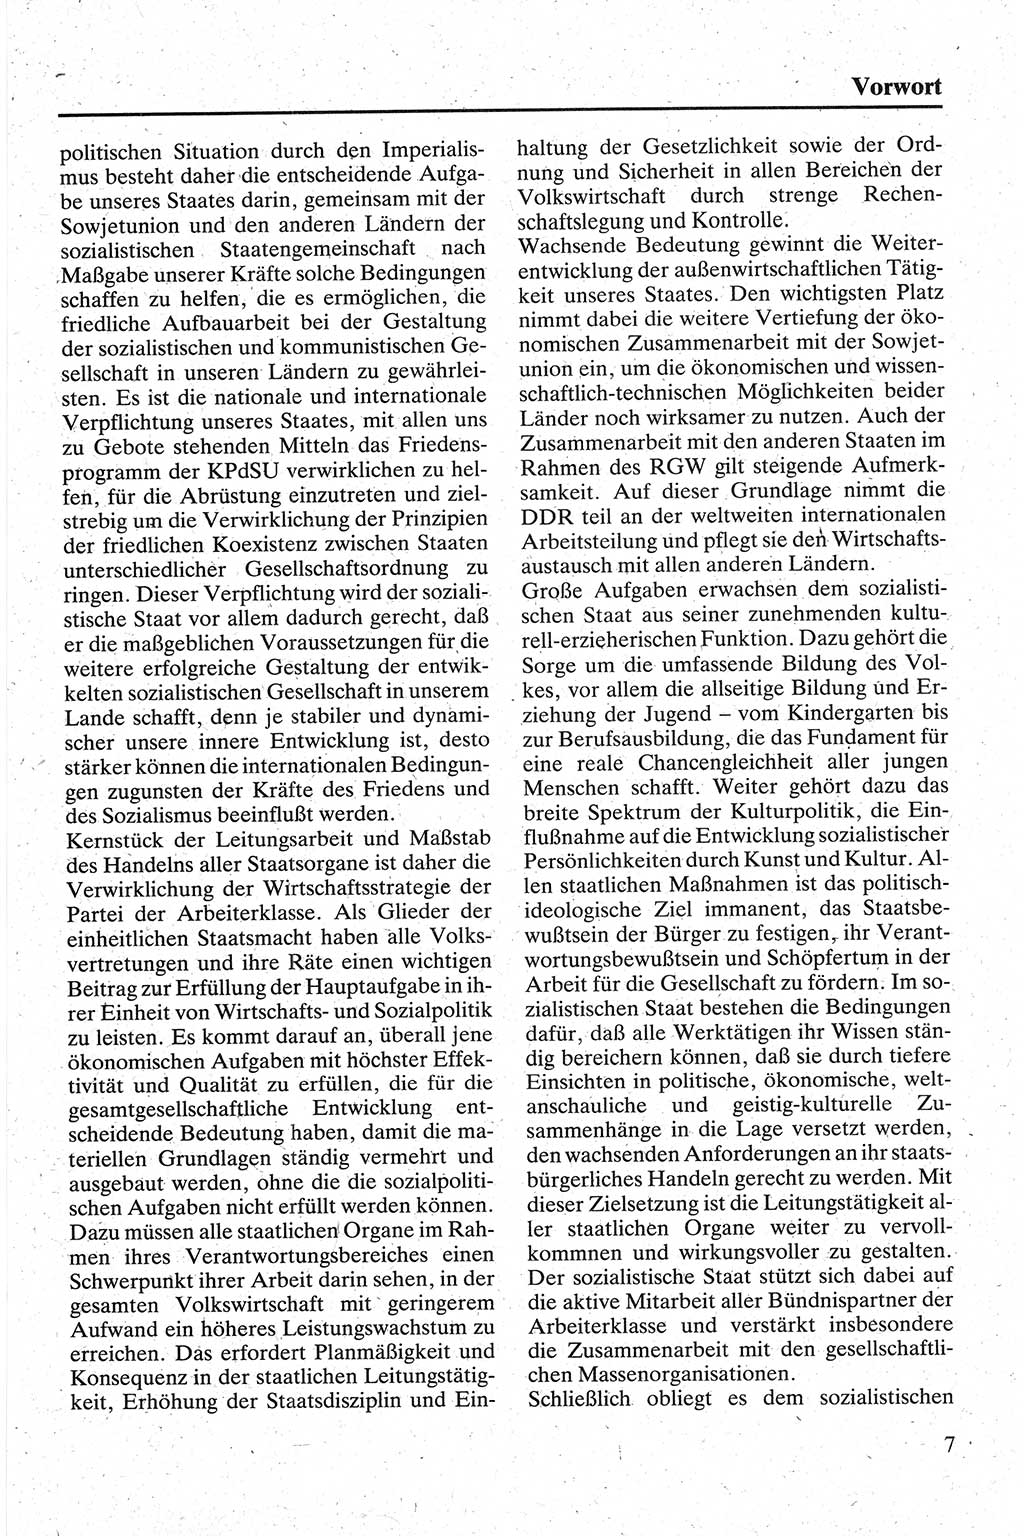 Handbuch für den Abgeordneten [Deutsche Demokratische Republik (DDR)] 1984, Seite 7 (Hb. Abg. DDR 1984, S. 7)